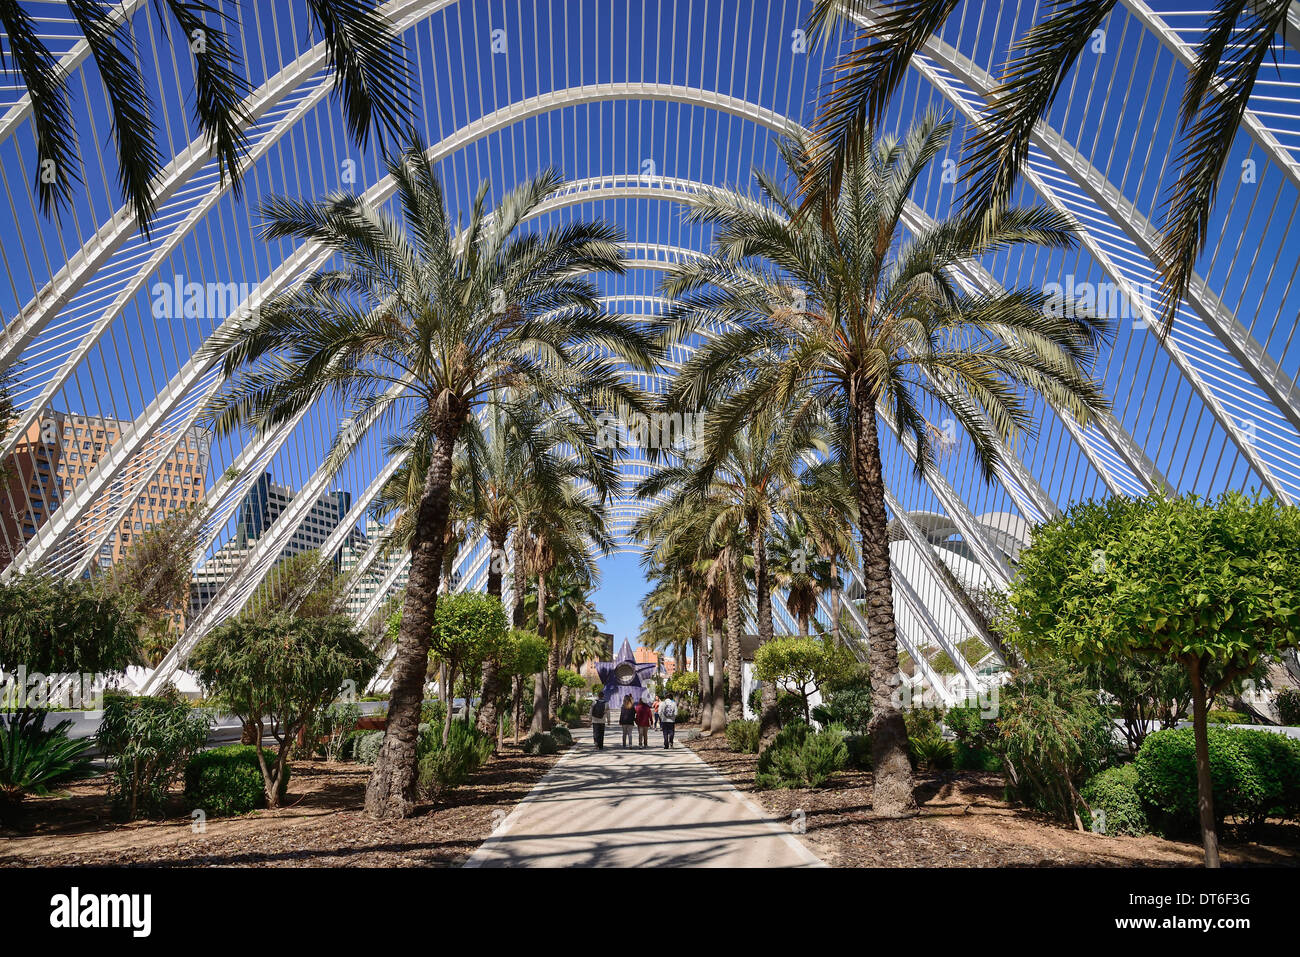 Spanien, Valencia, La Ciudad de las Artes y las Ciencias, die Stadt der Künste und Wissenschaften, innere das Umbracle Skulptur Garten. Stockfoto